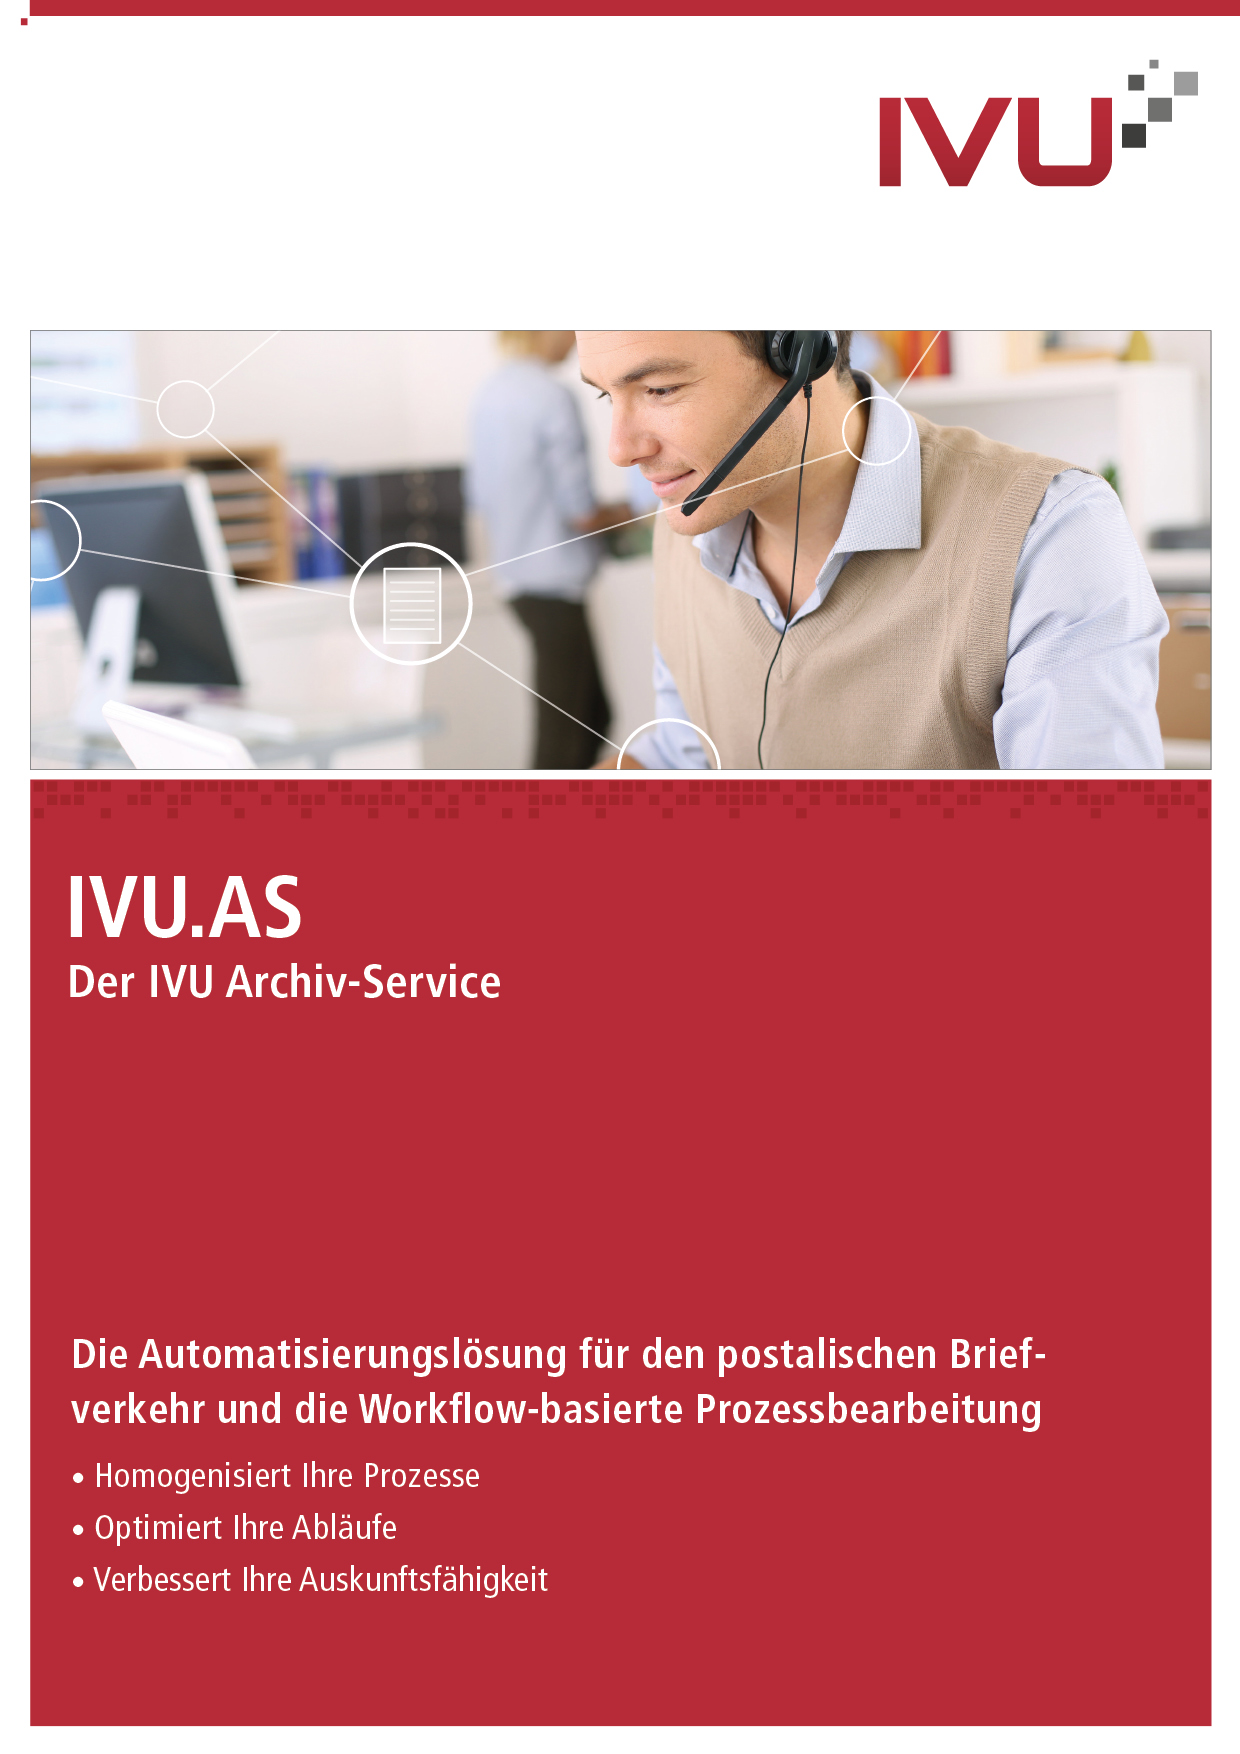 IVU.AS - Der IVU Archiv-Service